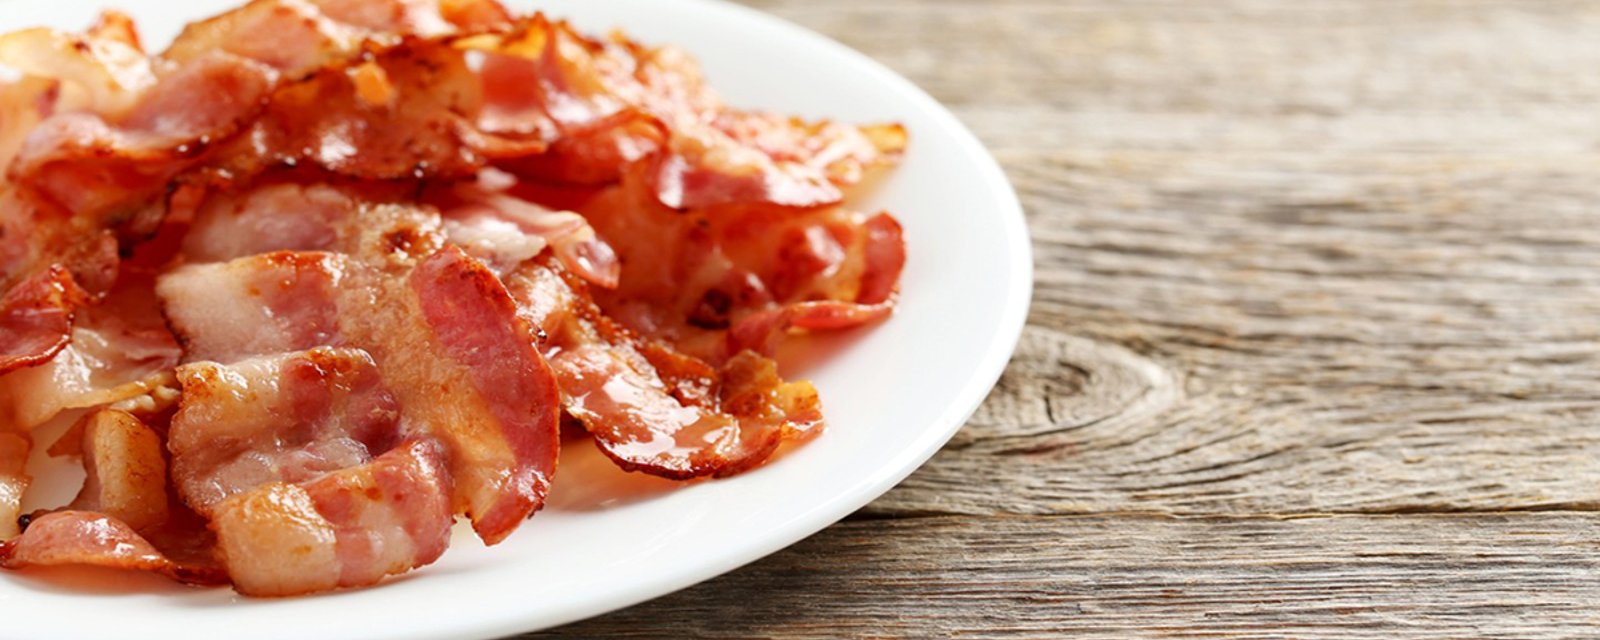 La meilleure façon de cuire le bacon... extra croustillant et sans éclaboussures